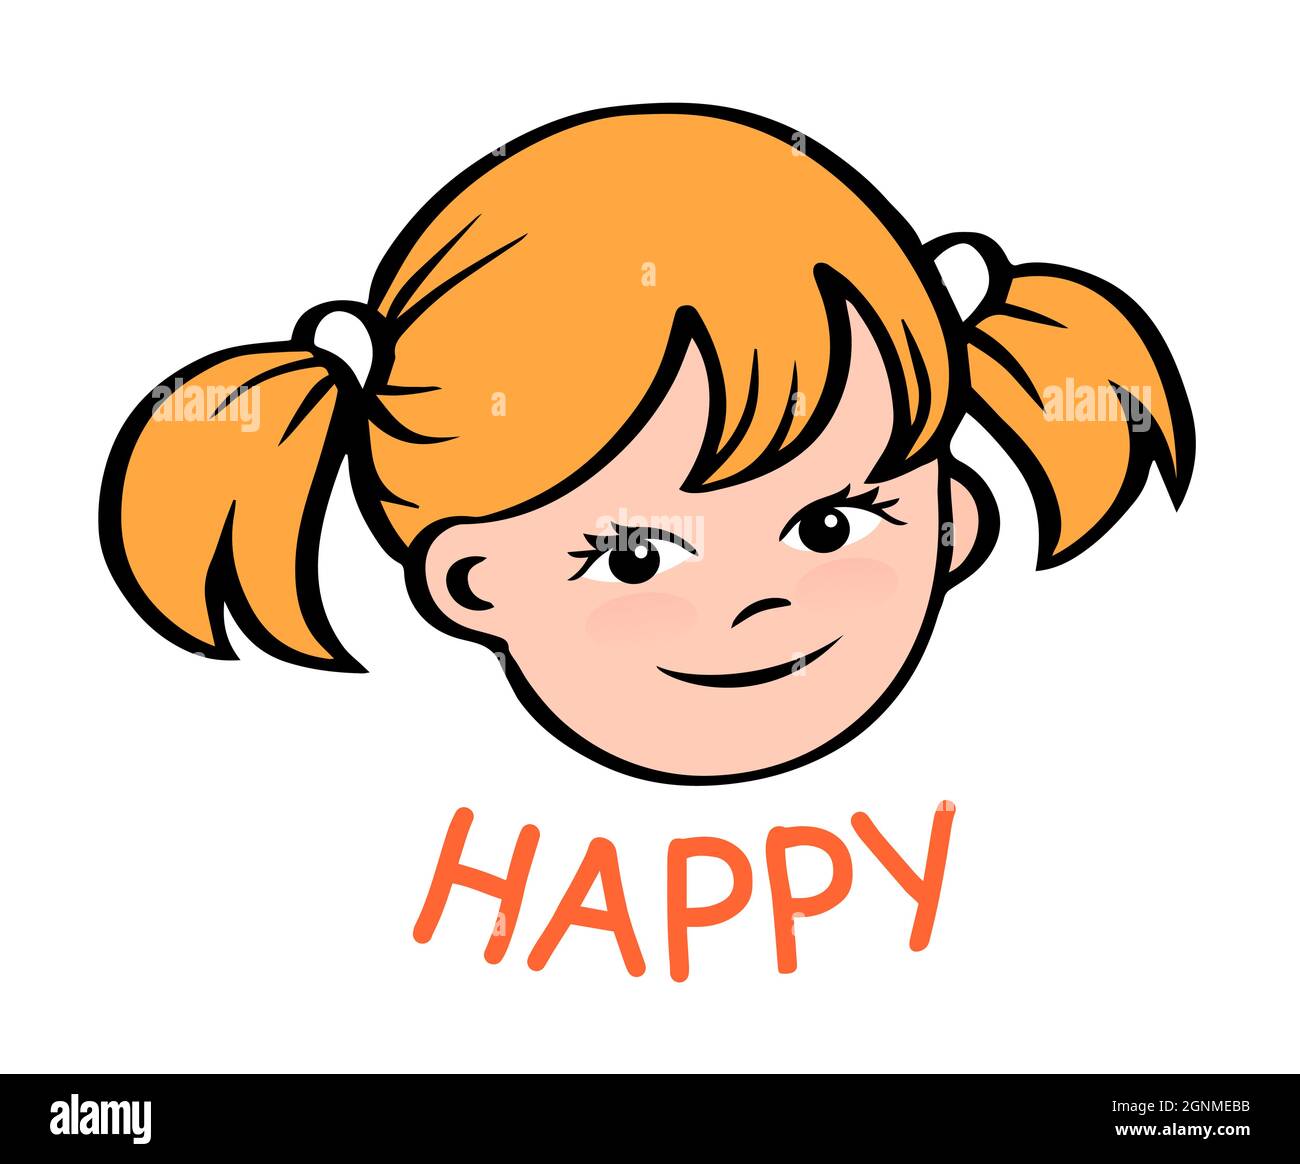 Portrait d'une petite fille heureuse. Un sourire sur son visage. Illustration de dessin animé vectoriel d'une tête enfant. Contour tracé à la main Illustration de Vecteur